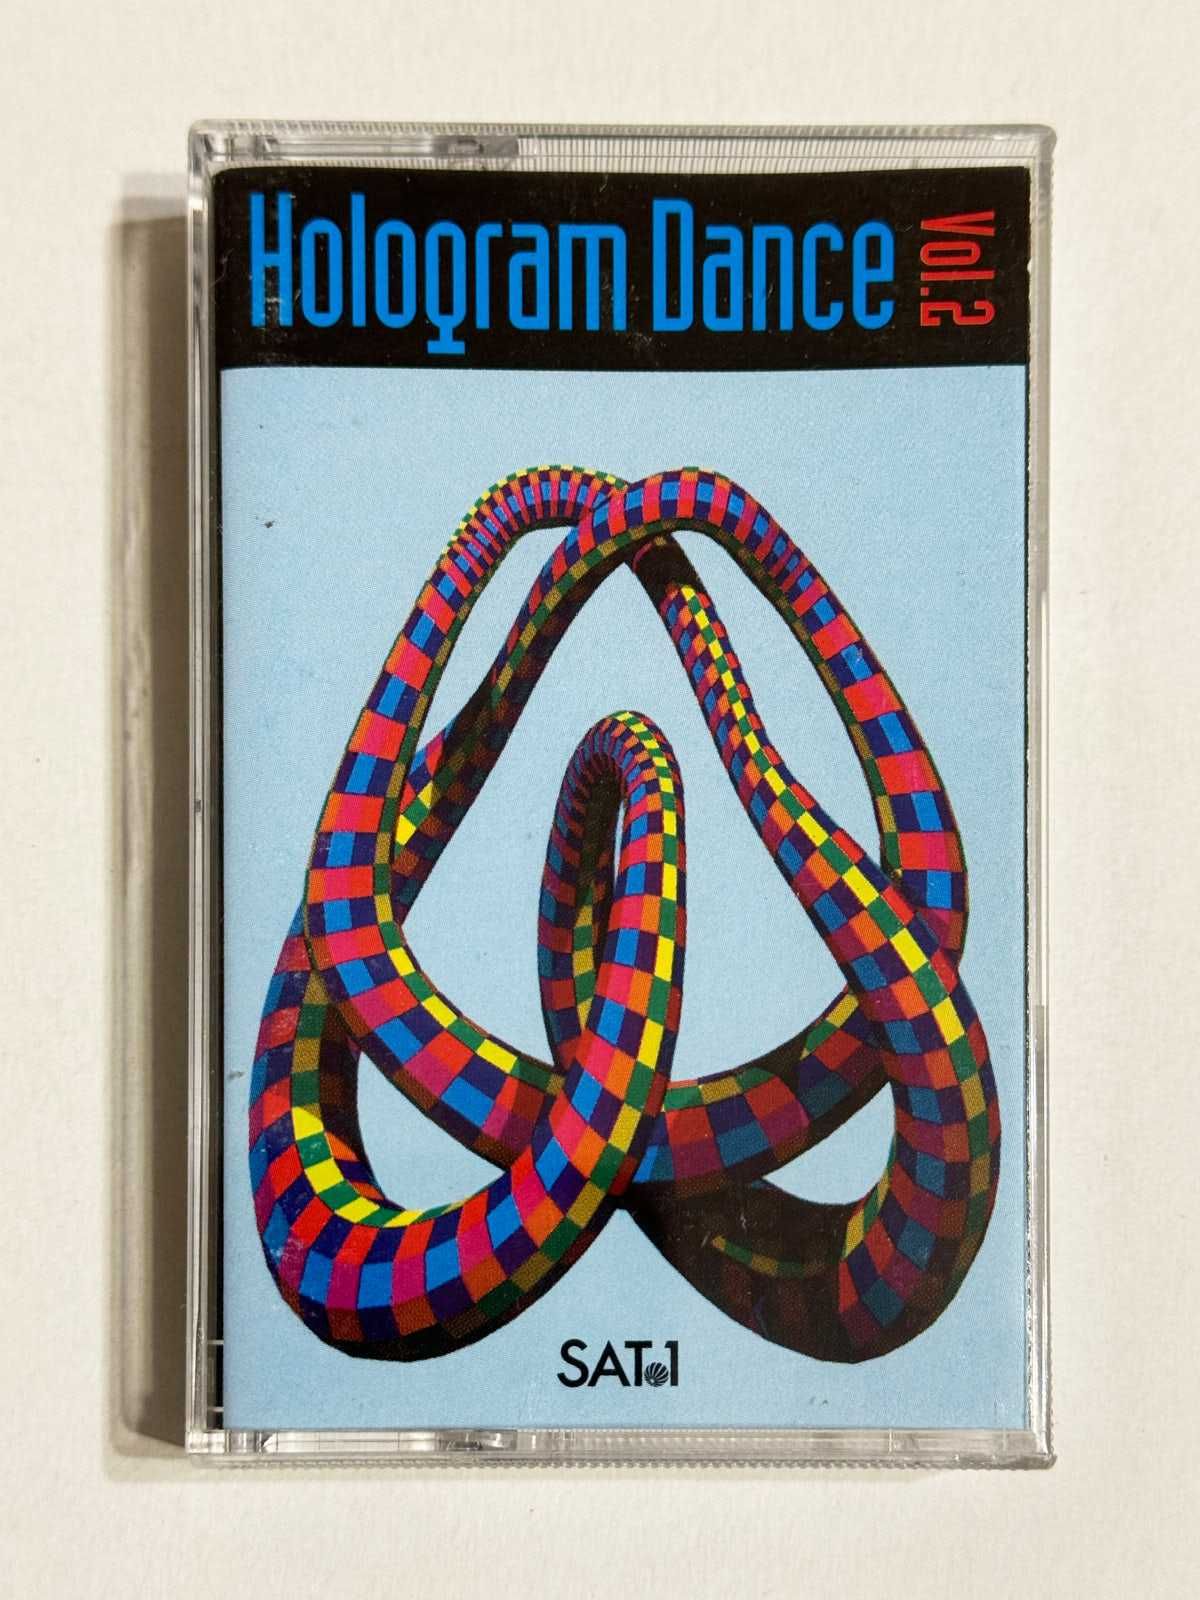 Hologram Dance Vol. 2 (Kaseta) DJ Bobo, Jam & Spoon, Scooter